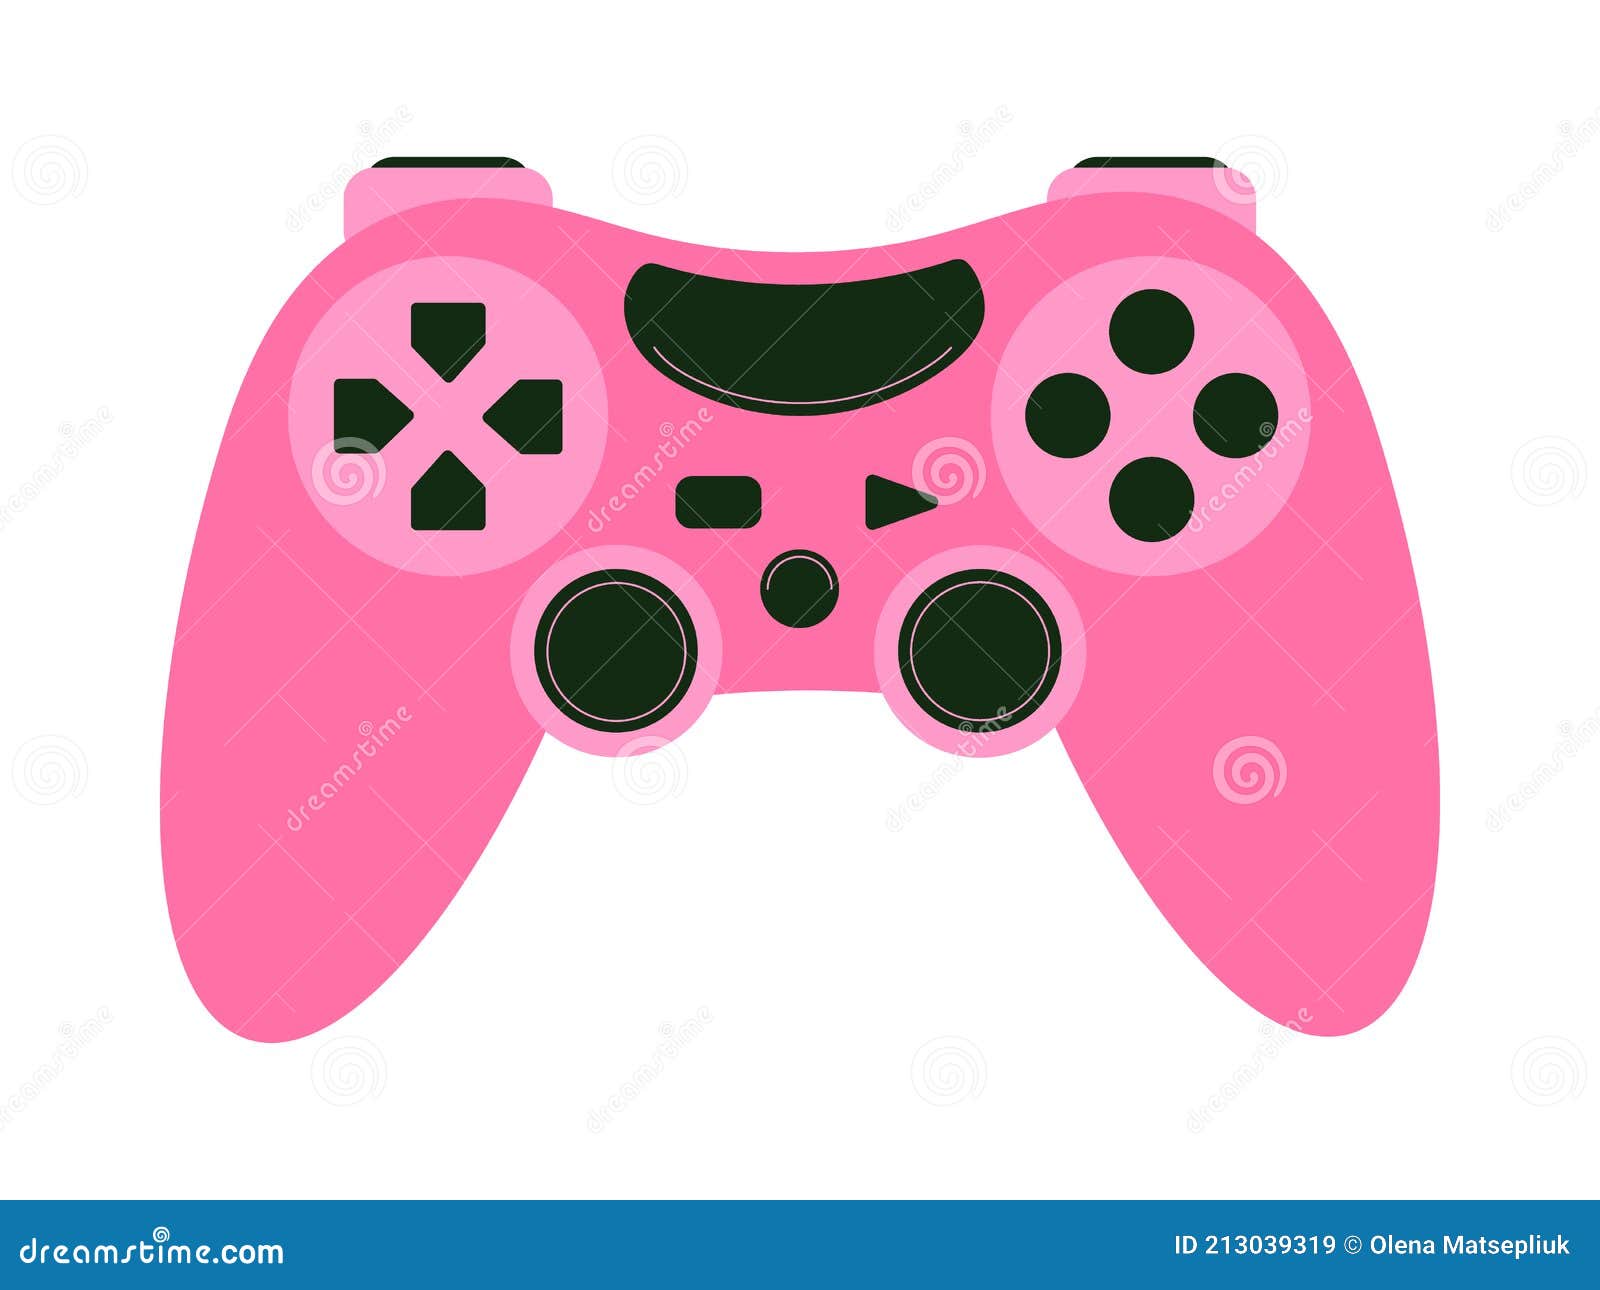 Đây là sản phẩm không thể bỏ qua cho những cô gái yêu thích chơi game. Một chiếc joystick màu hồng xinh đẹp sẽ khiến bạn thích thú và cảm thấy vui vẻ hơn khi lướt game. Thiết kế nhỏ gọn, dễ cầm nắm và giúp trải nghiệm game tuyệt vời hơn.